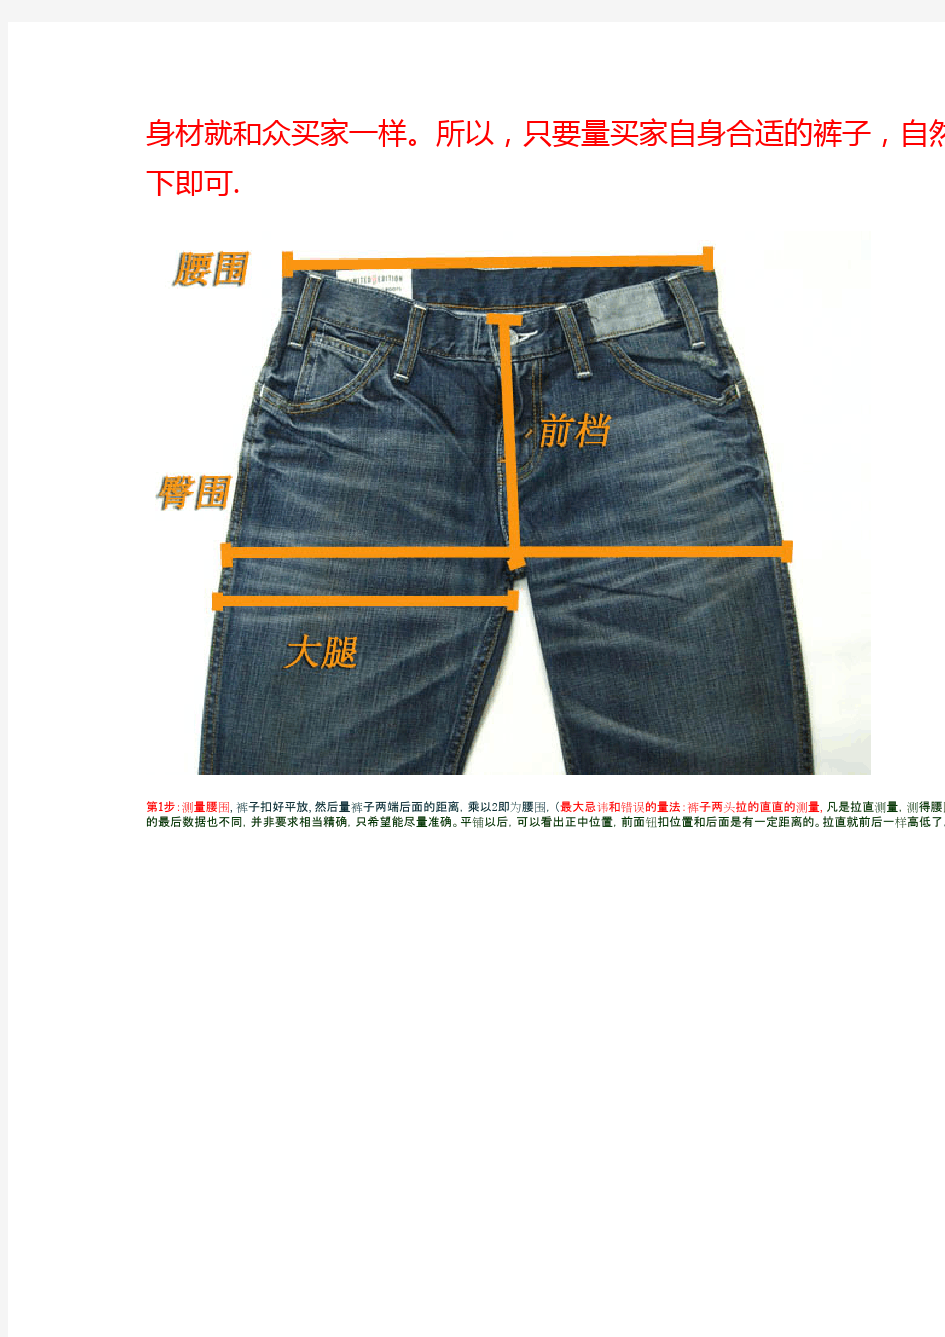 衣服与裤子 尺寸测量方法_图文